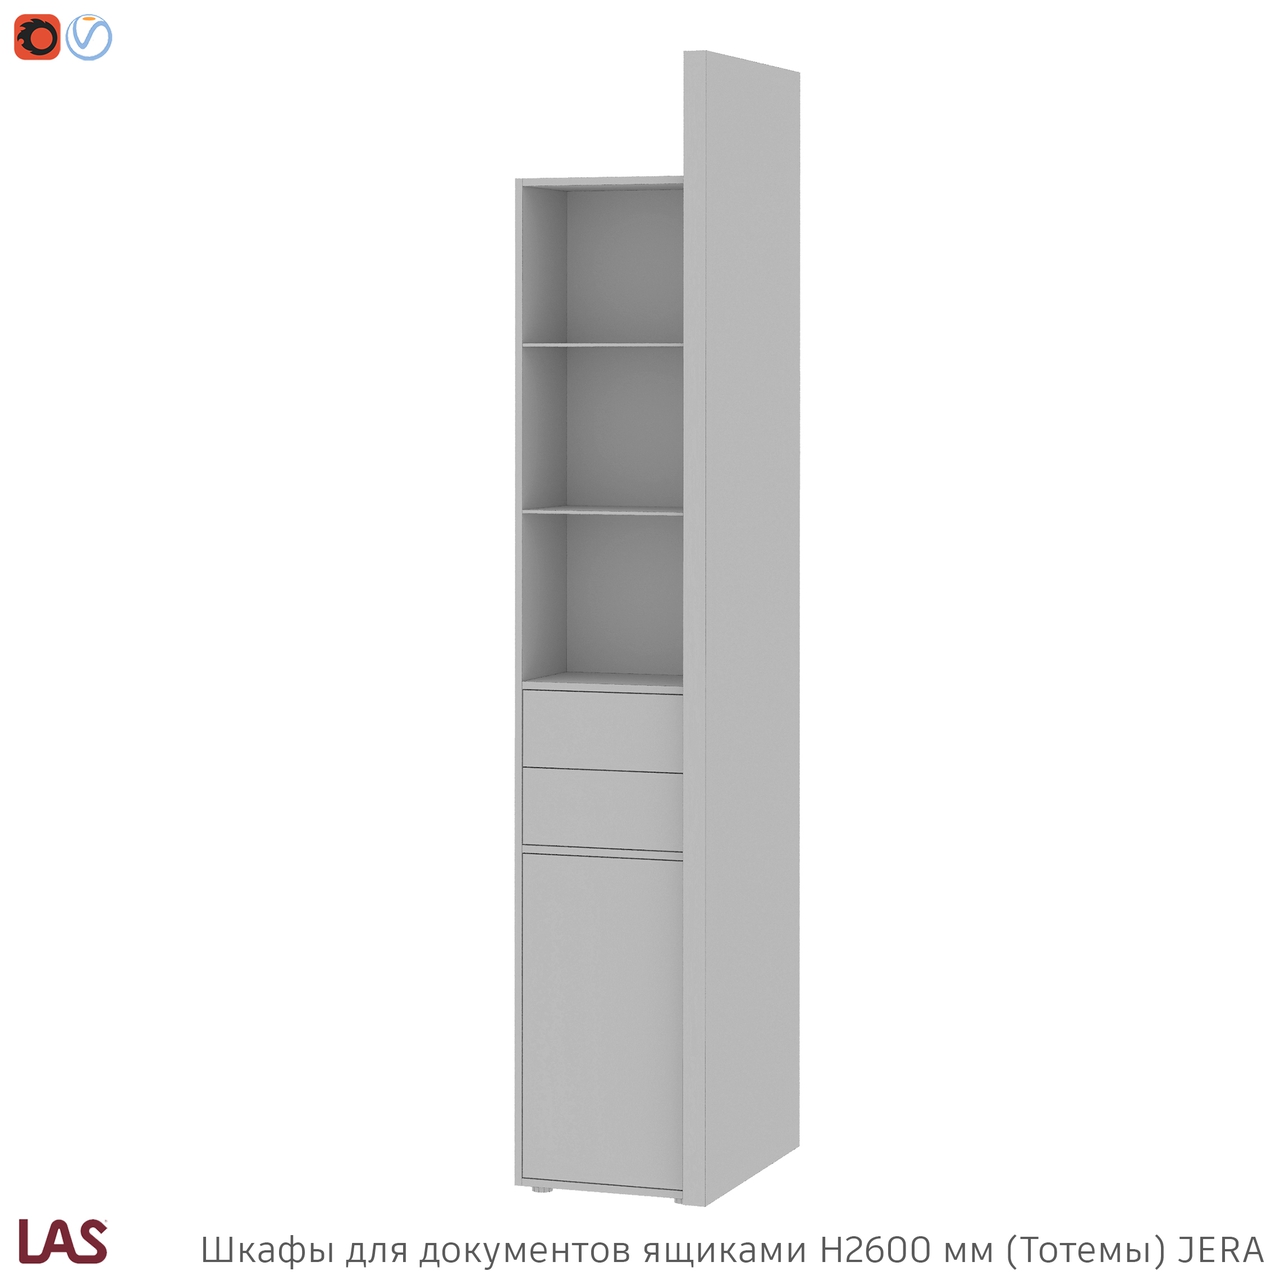 Превью G 3D-модели высоких тотемных шкафов с ящиками для кабинета LAS Jera 159969